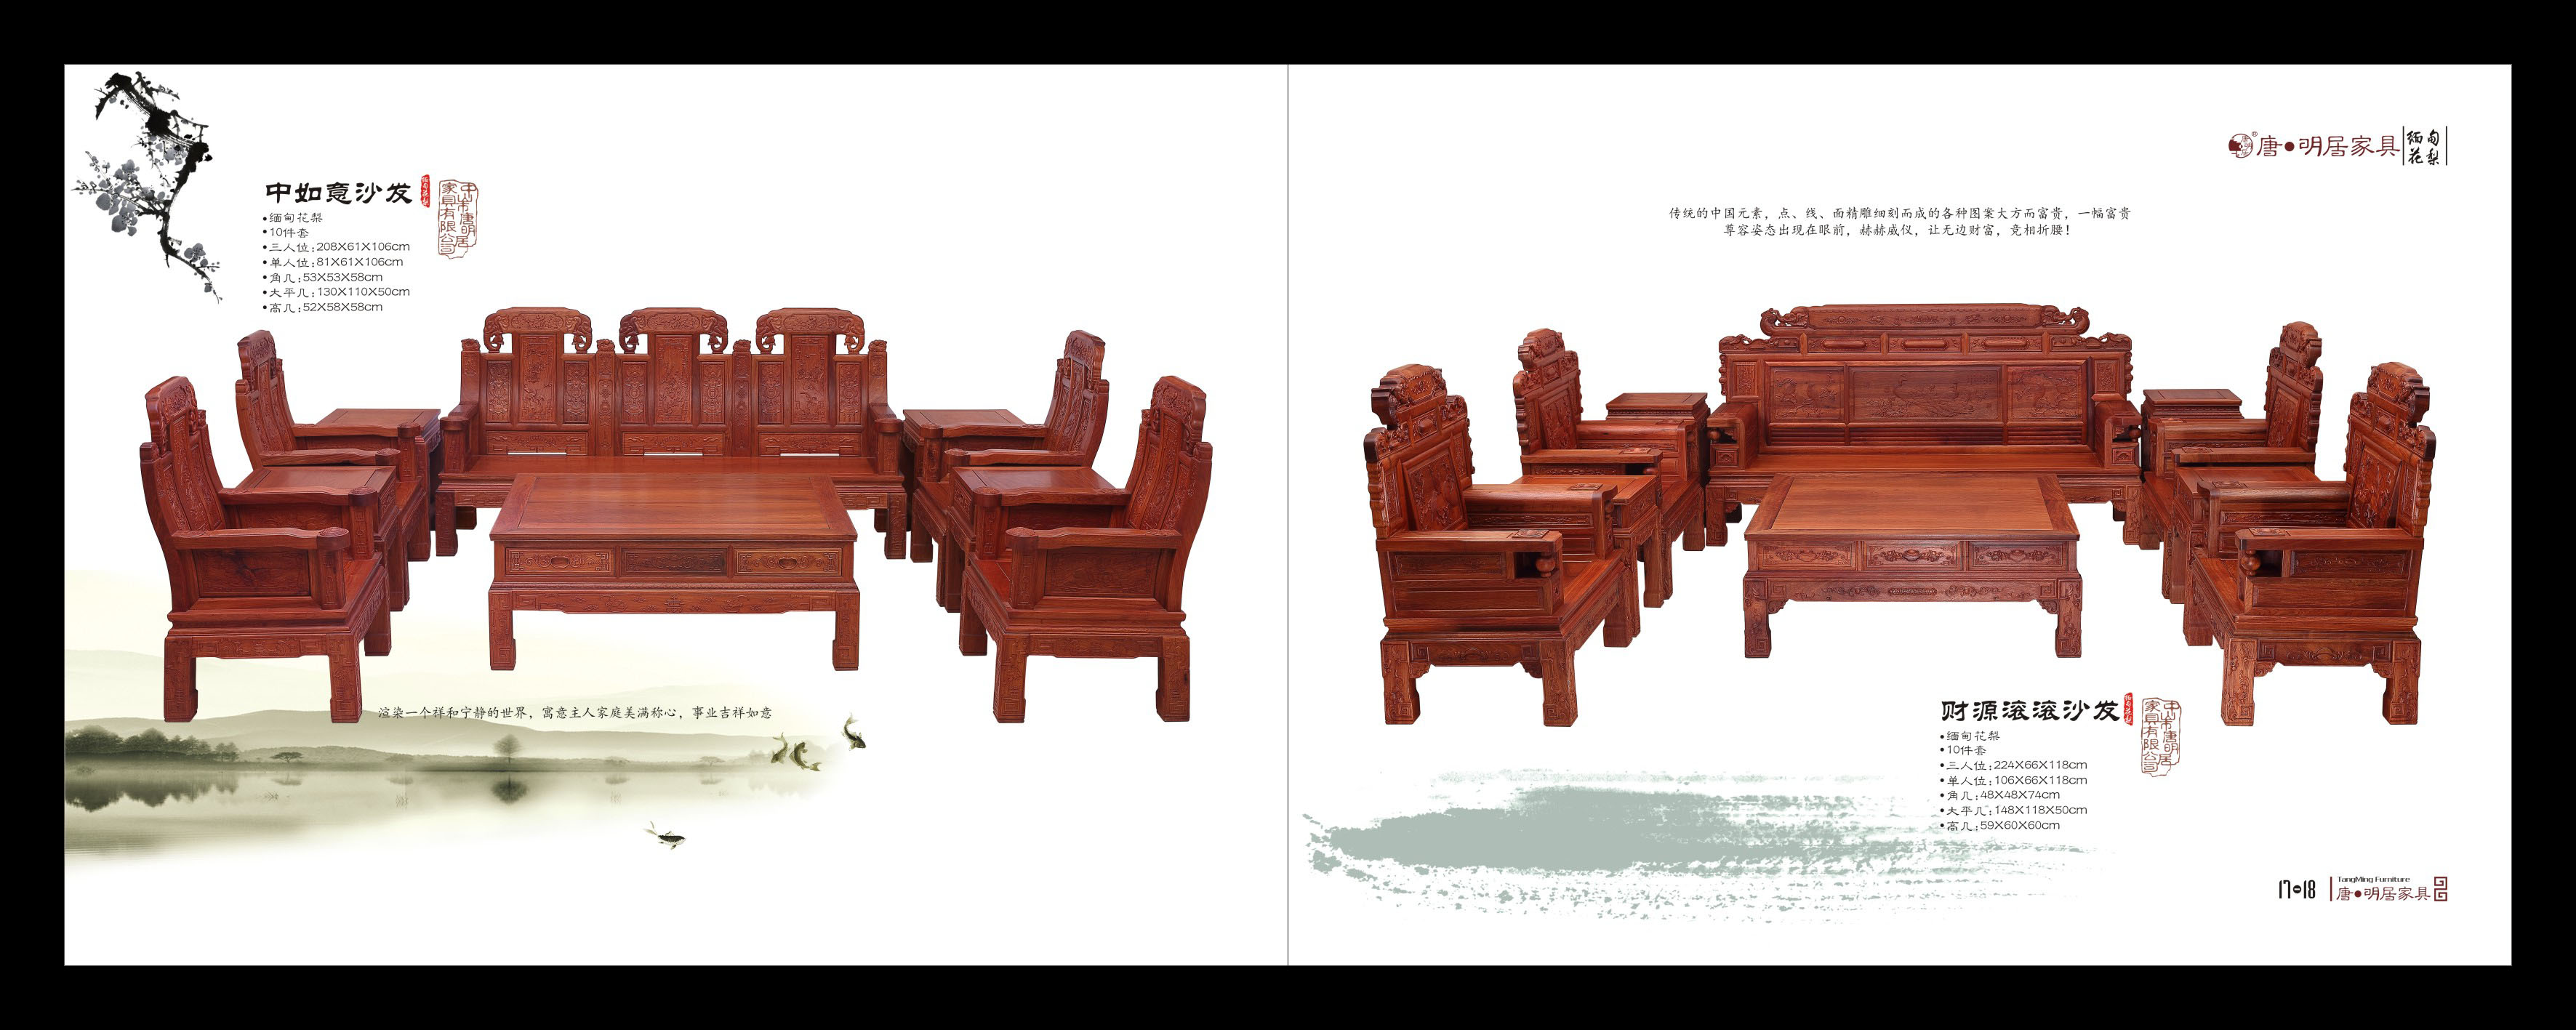 中山红木家具产品摄影画册设计海报单张设计制作服务